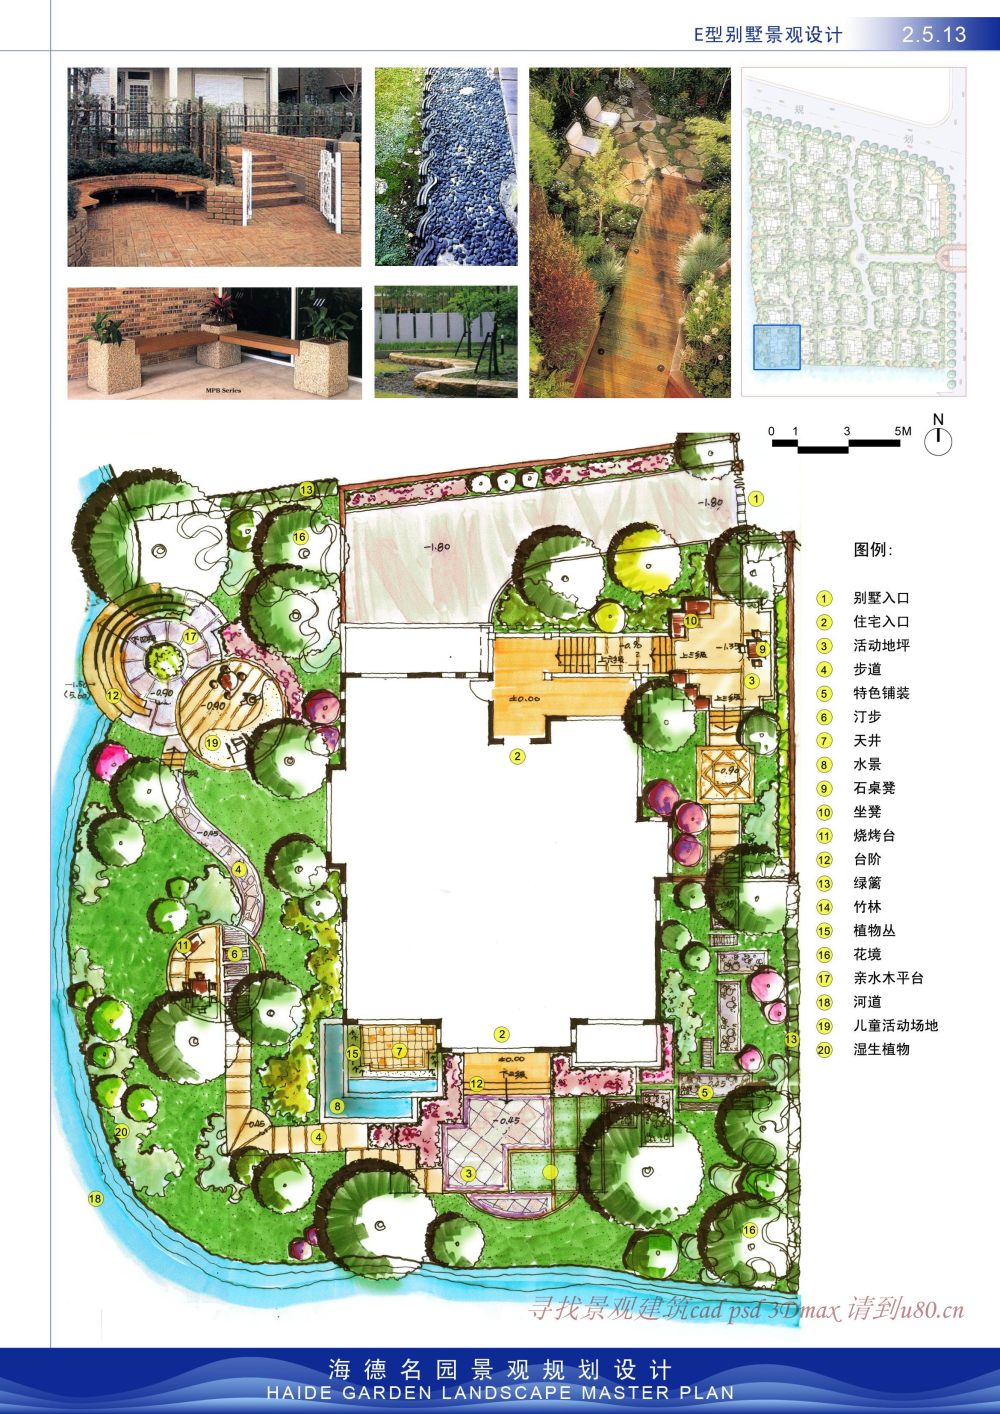 重发海德名园景观规划设计（优）_2.5.13.jpg